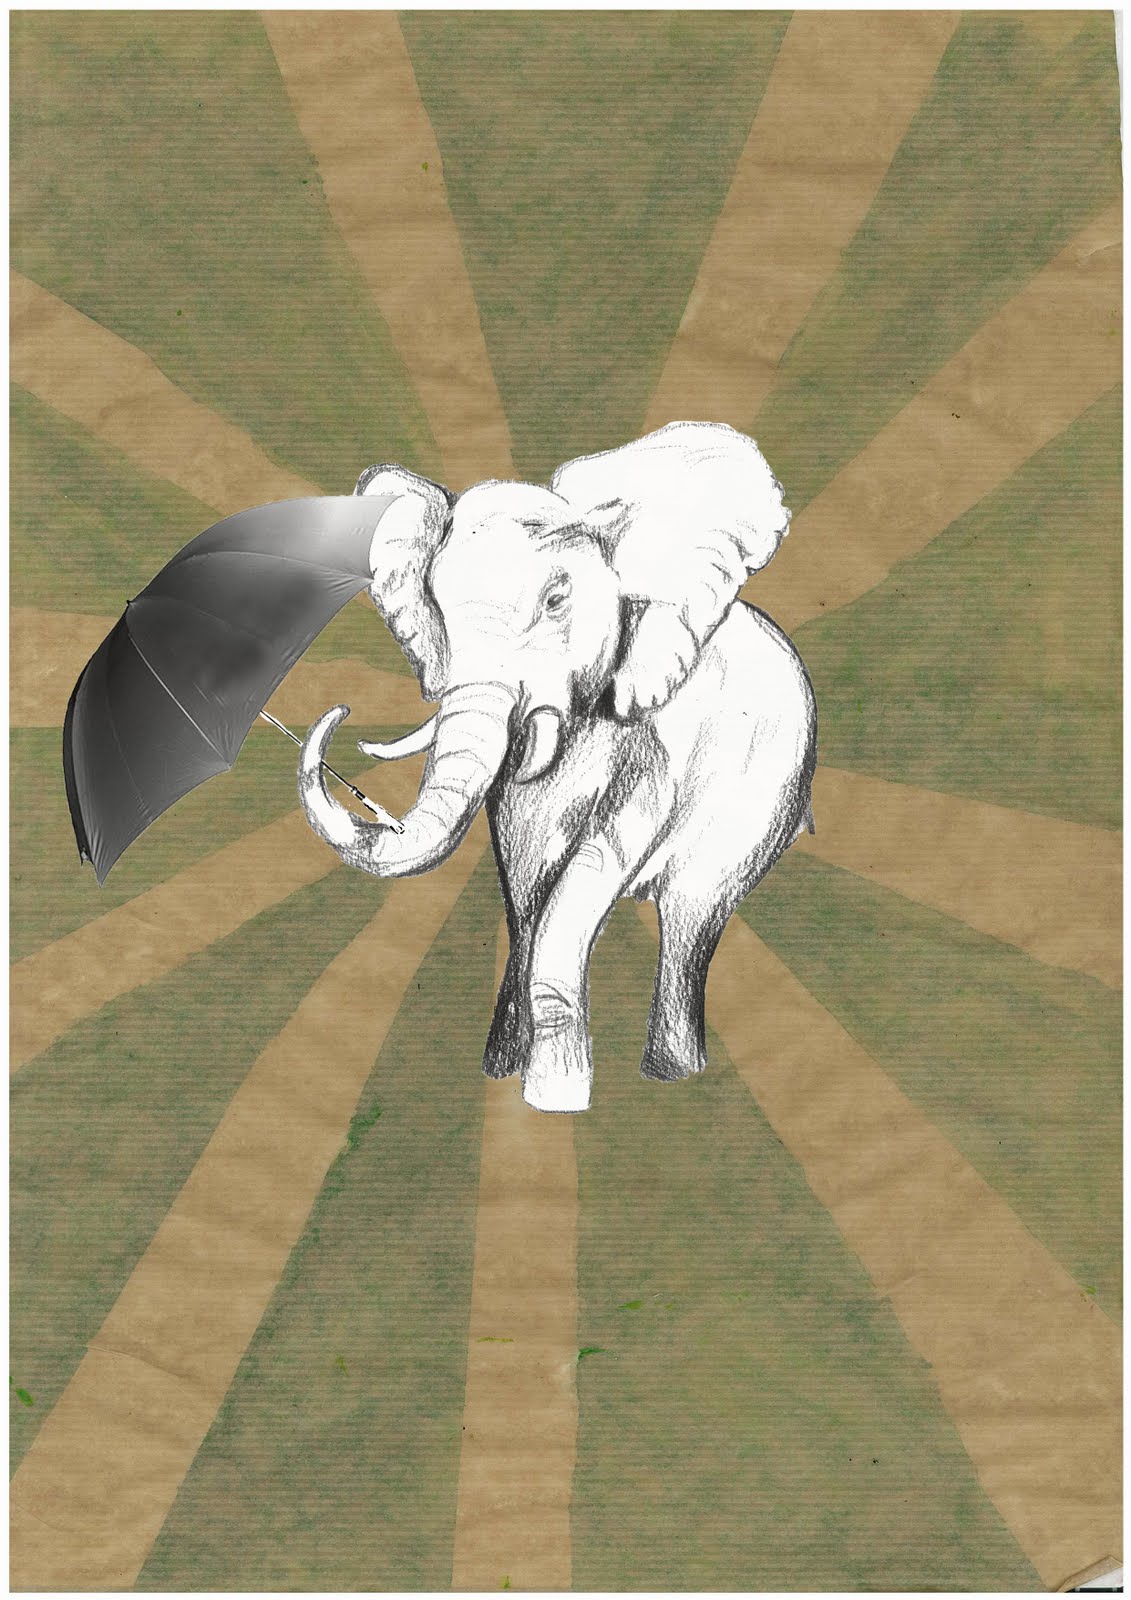 Elephant With Umbrella